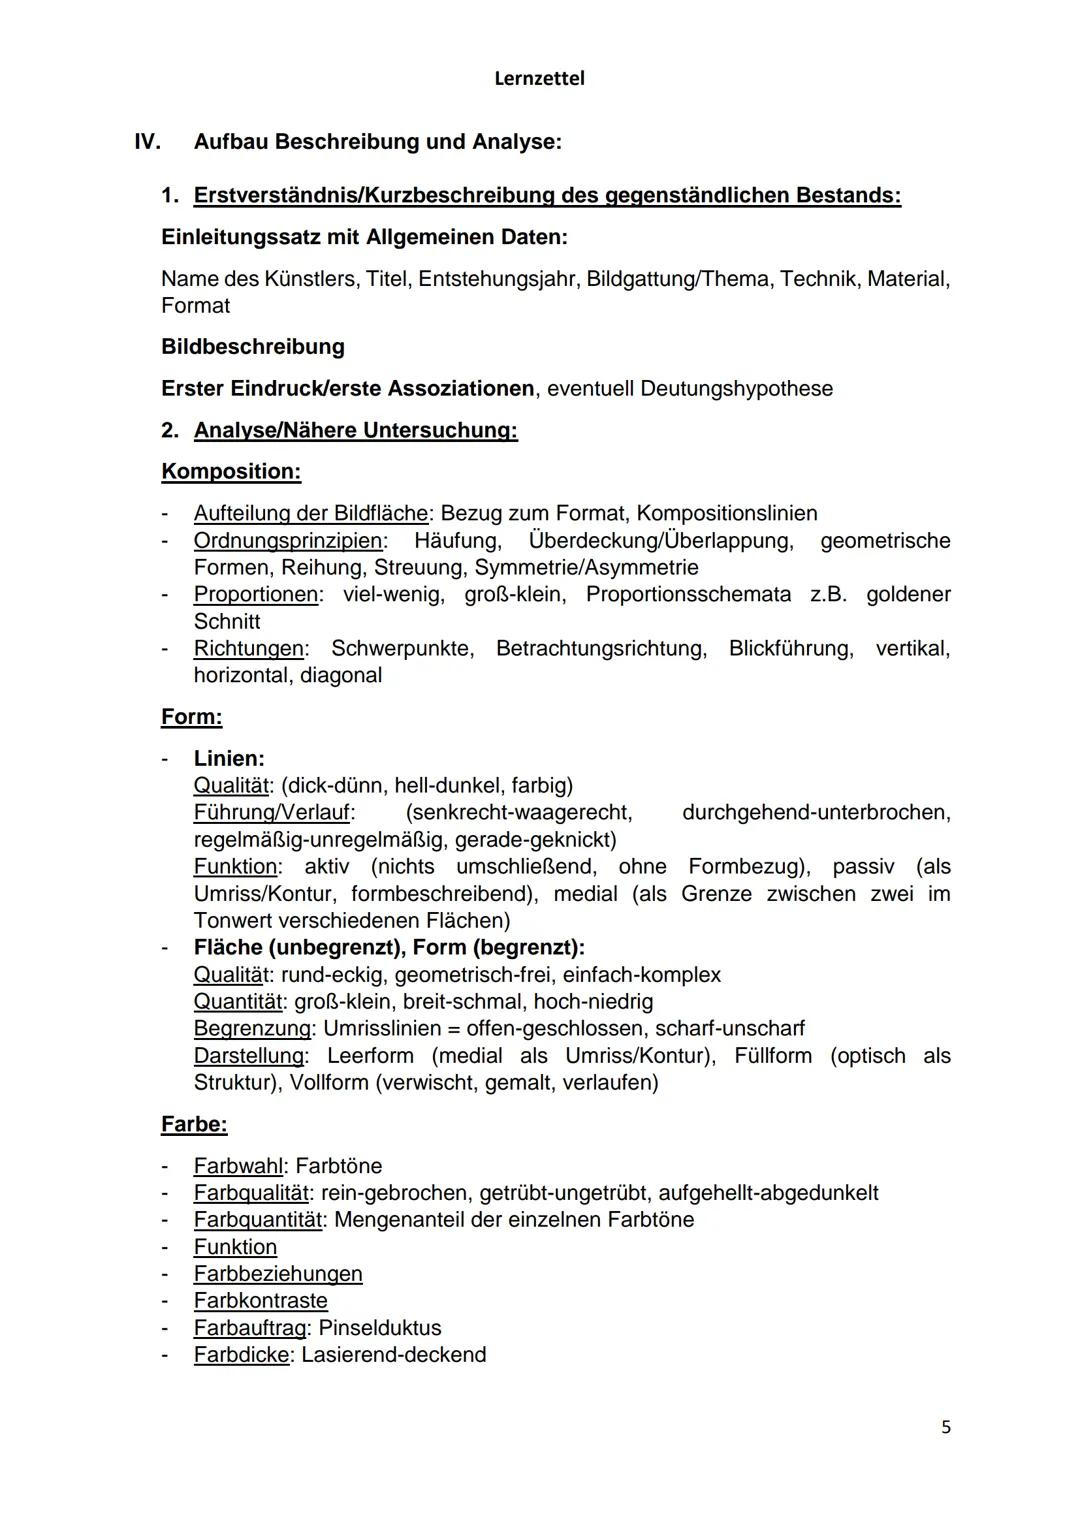 Lernzettel
Kunst, Vorabiturklausur LK
→ Klausur mit schriftlichem Schwerpunkt und praktischem Anteil (300min)
I. El Lissitzky:
El Lissitzky 